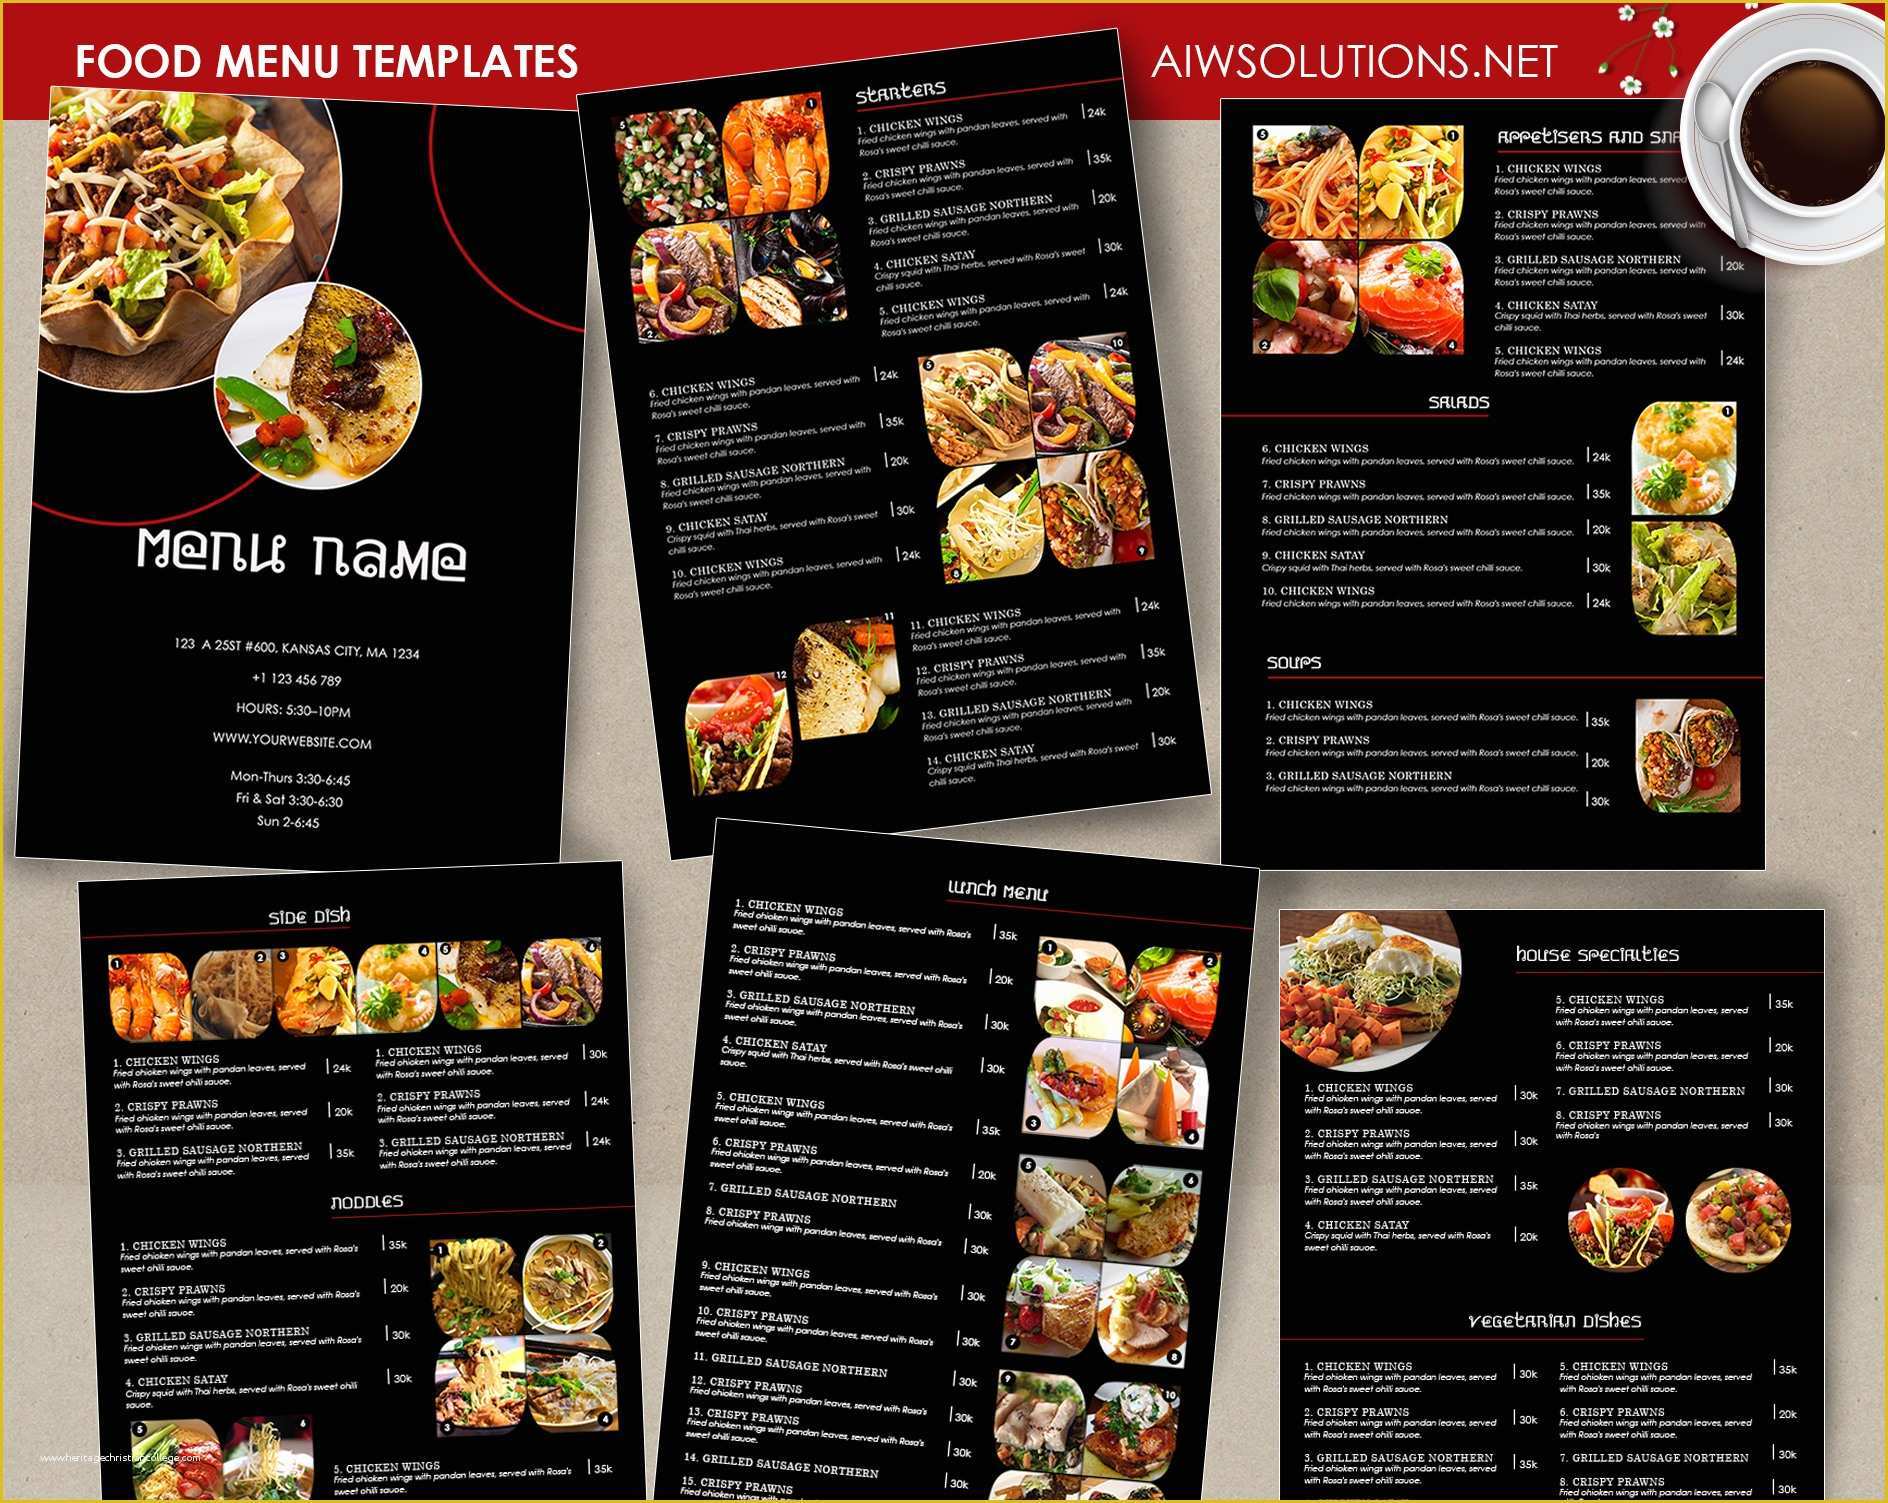 Thai Restaurant Menu Templates Free Of Design &amp; Templates Menu Templates Wedding Menu Food